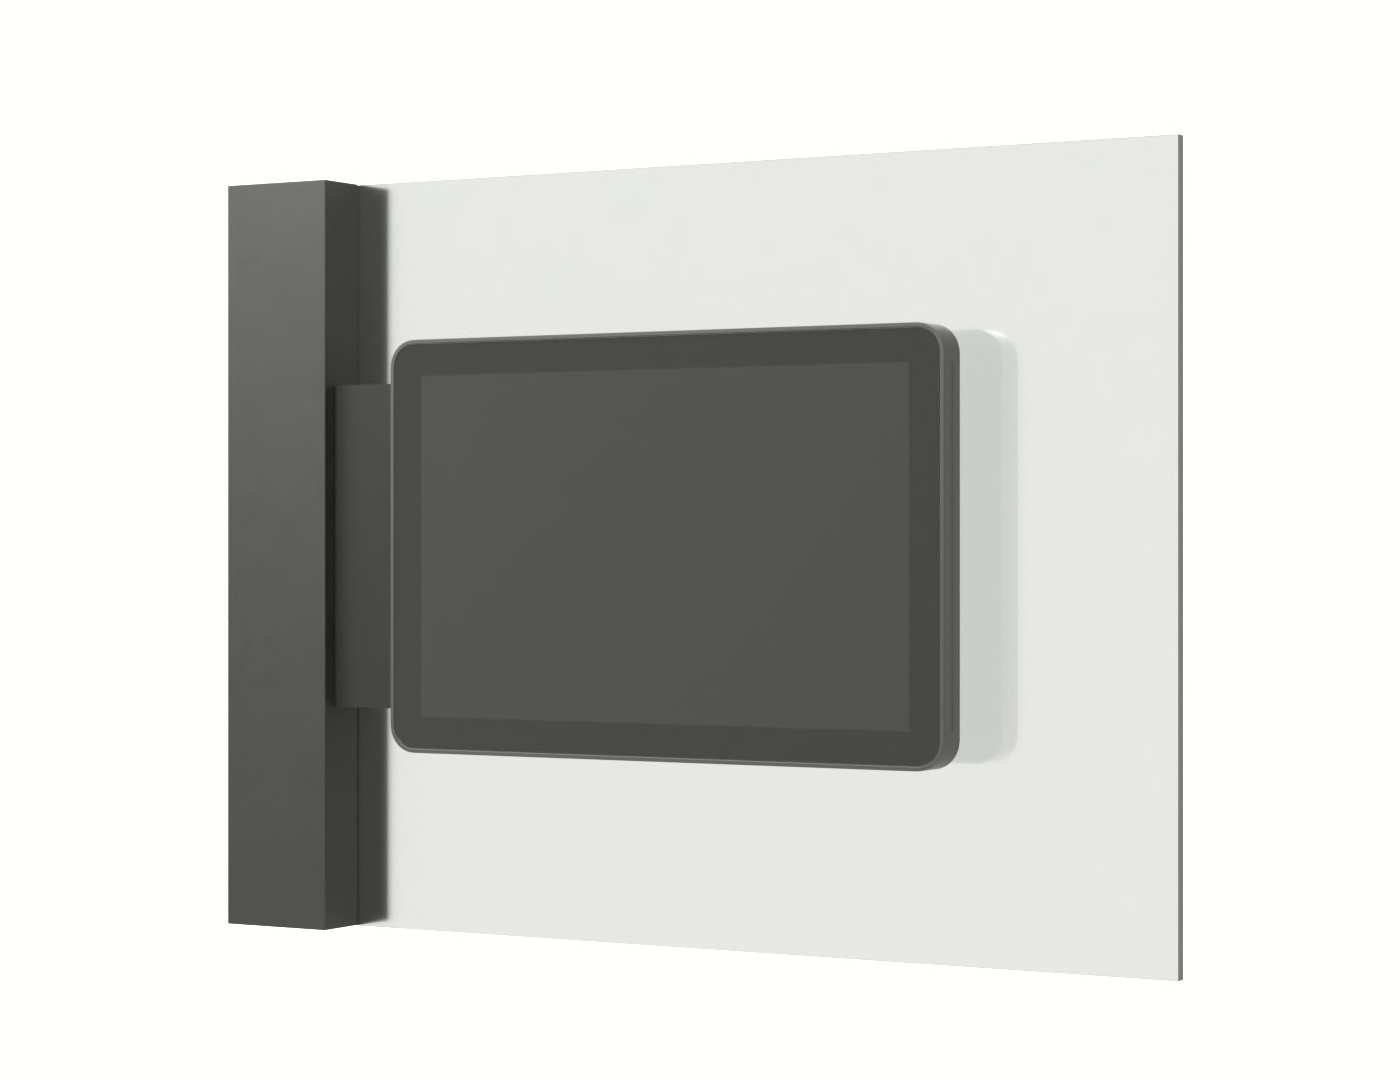 logitech-tap-scheduler-mount-glass.jpg (1400×1080)